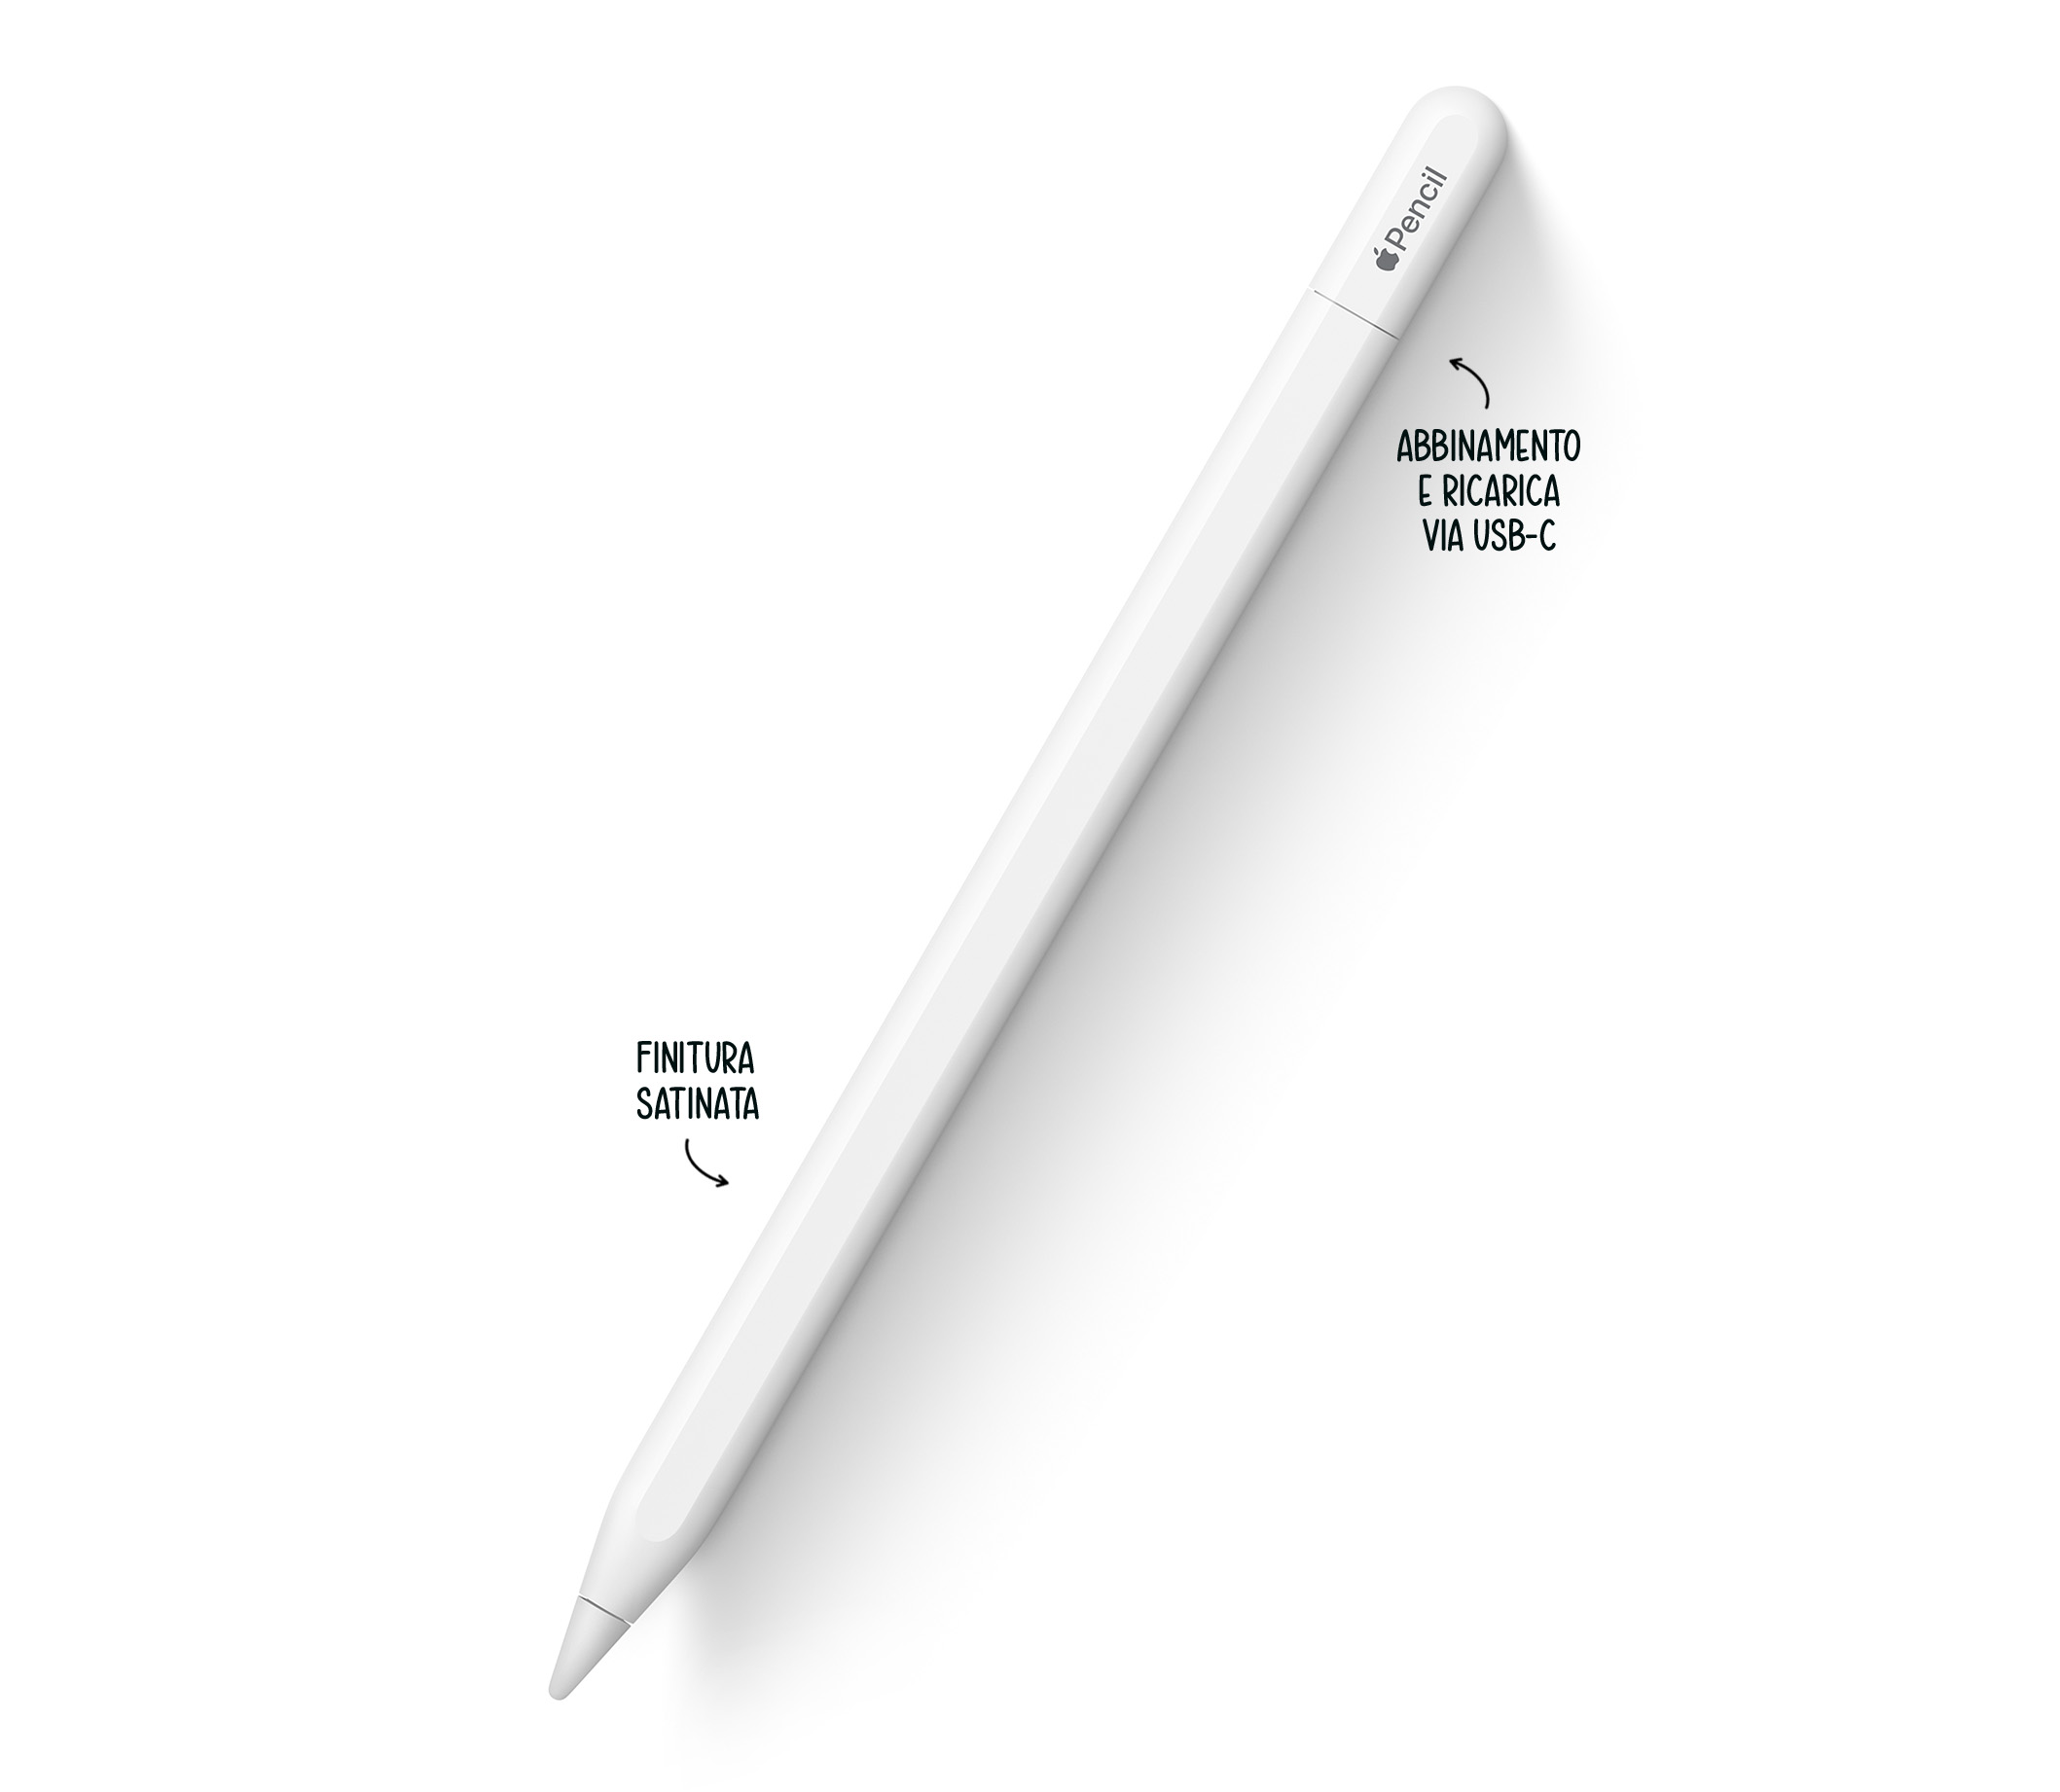 È uscita la nuova Apple Pencil USB-C ed è la più economica ma perde  alcune funzioni